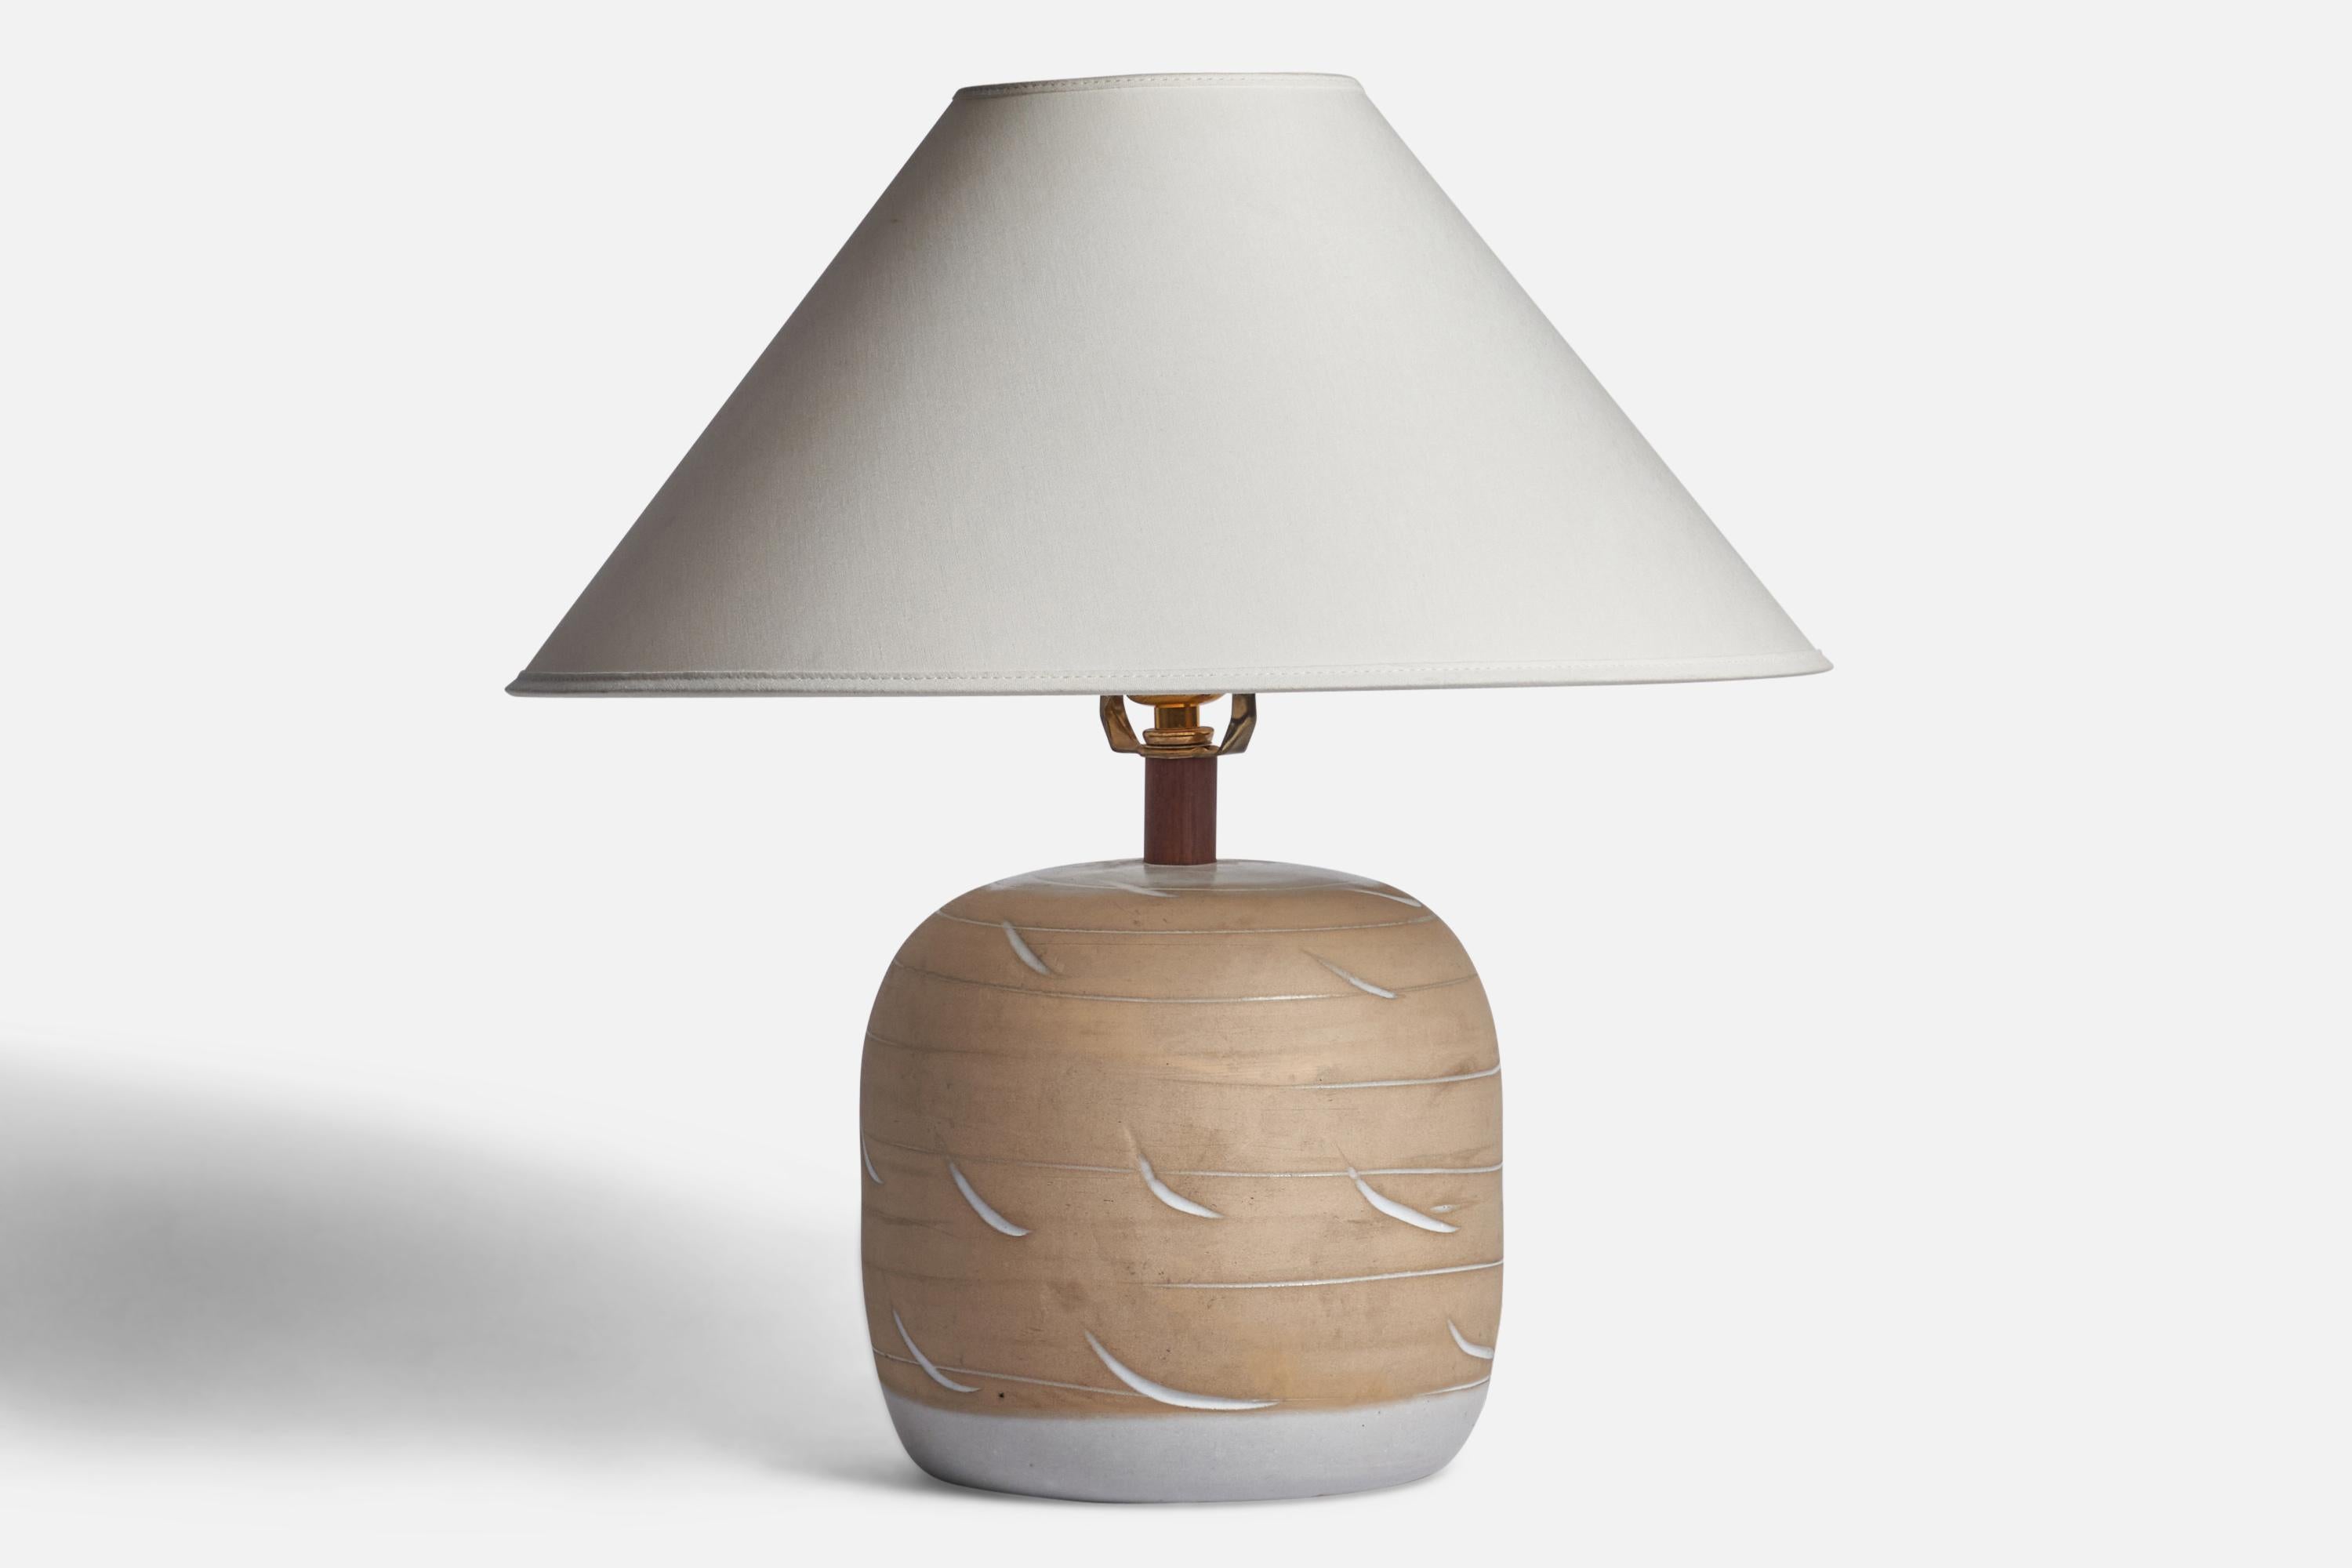 Lampe de table en céramique émaillée gris et beige et lampe en noyer conçues par Jane & Gordon Martz et produites par Marshall Studios, États-Unis, années 1960.

Dimensions de la lampe (pouces) : 12